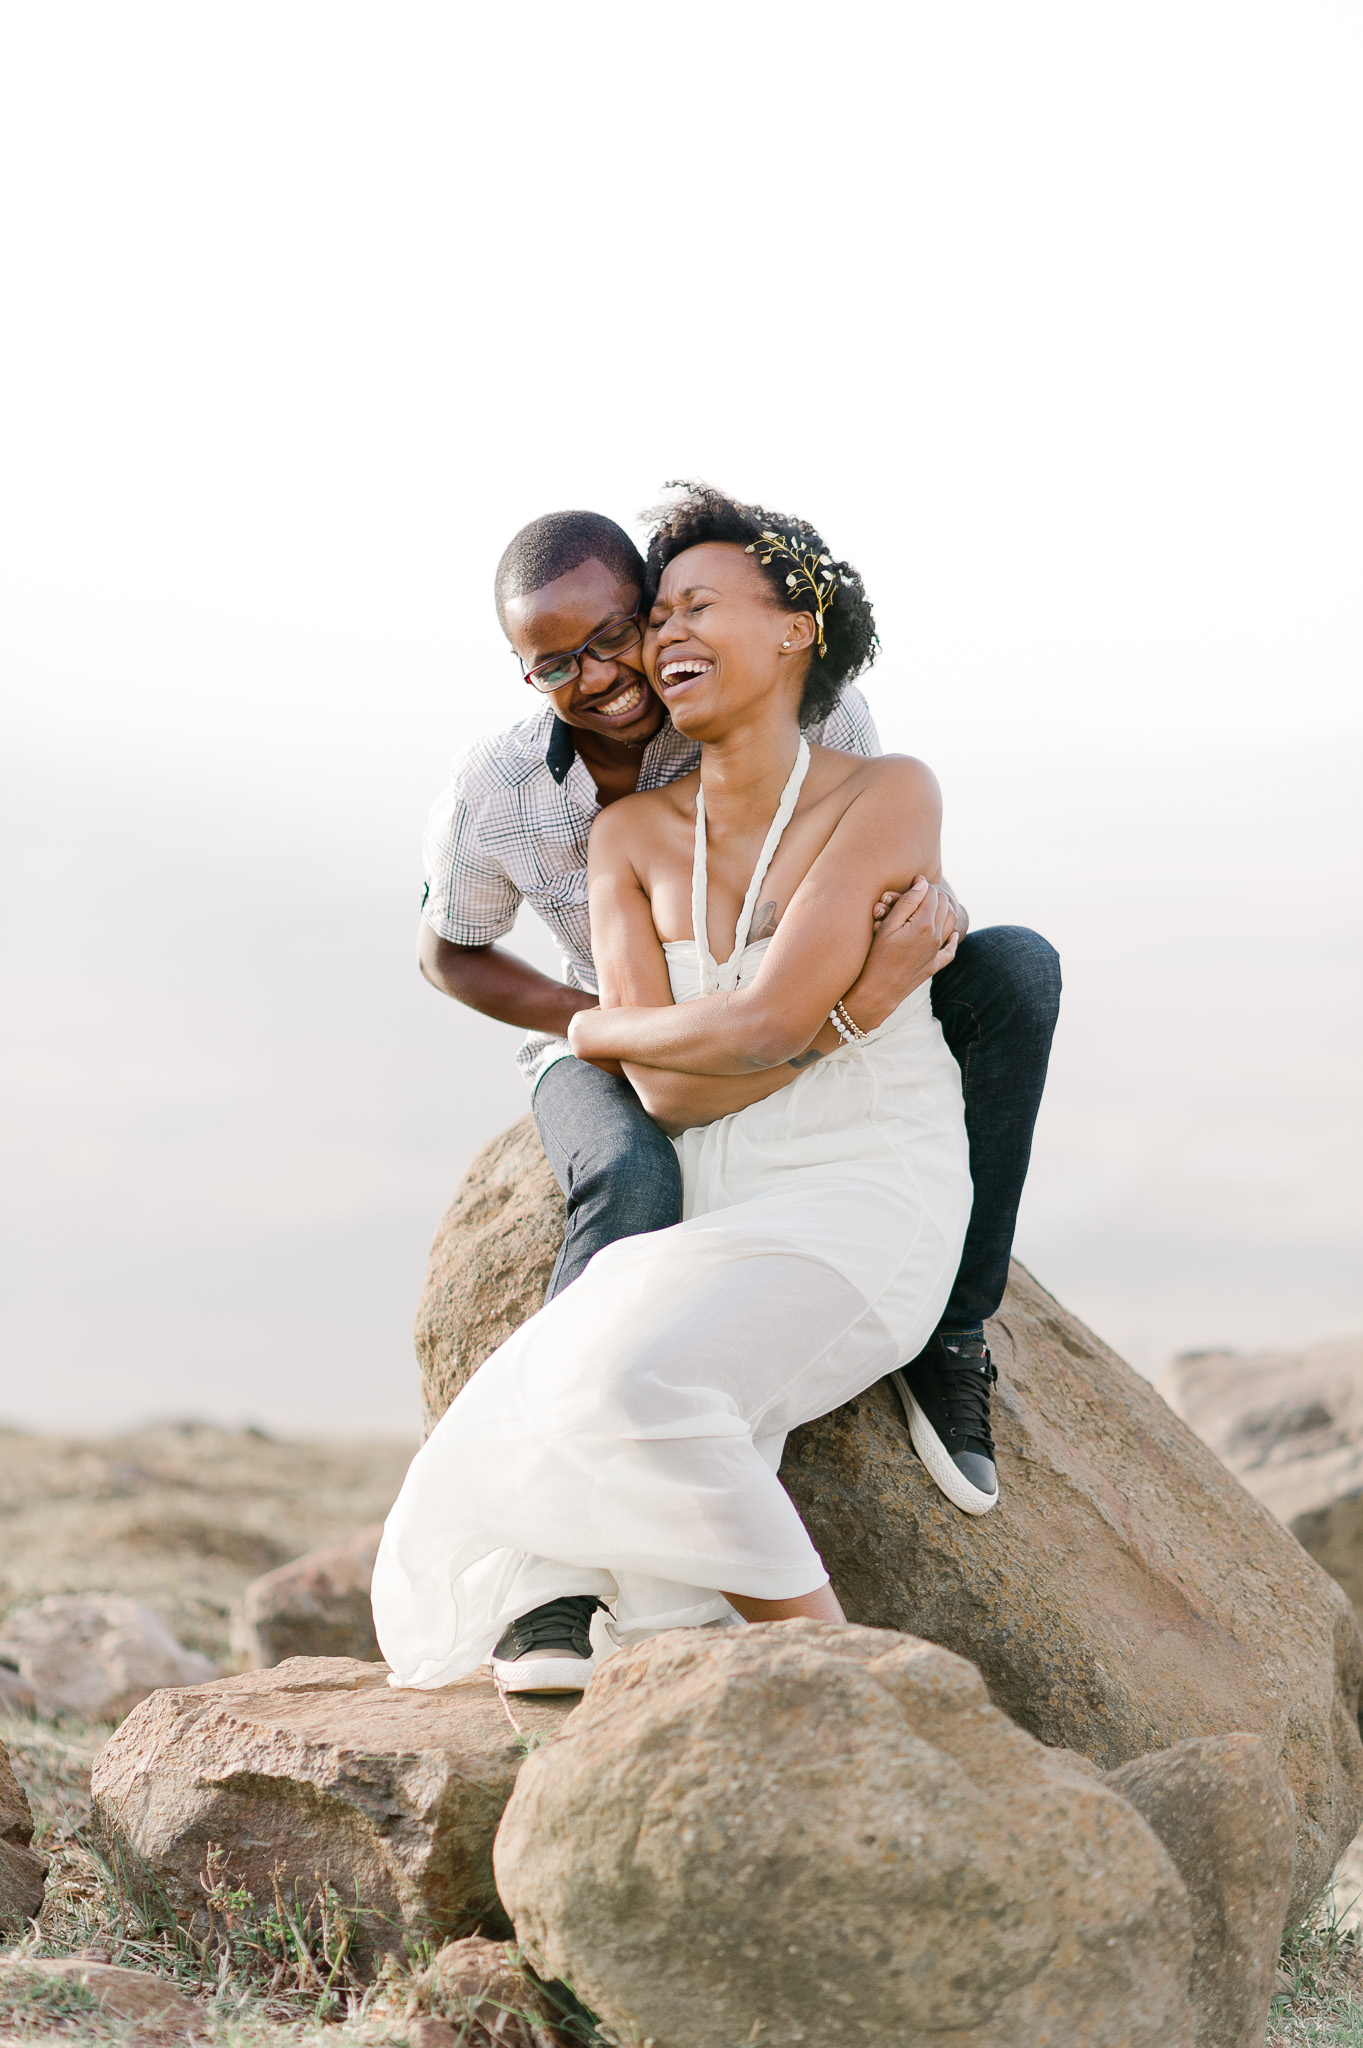 Kenyan Wedding Photographer based in Nairobi